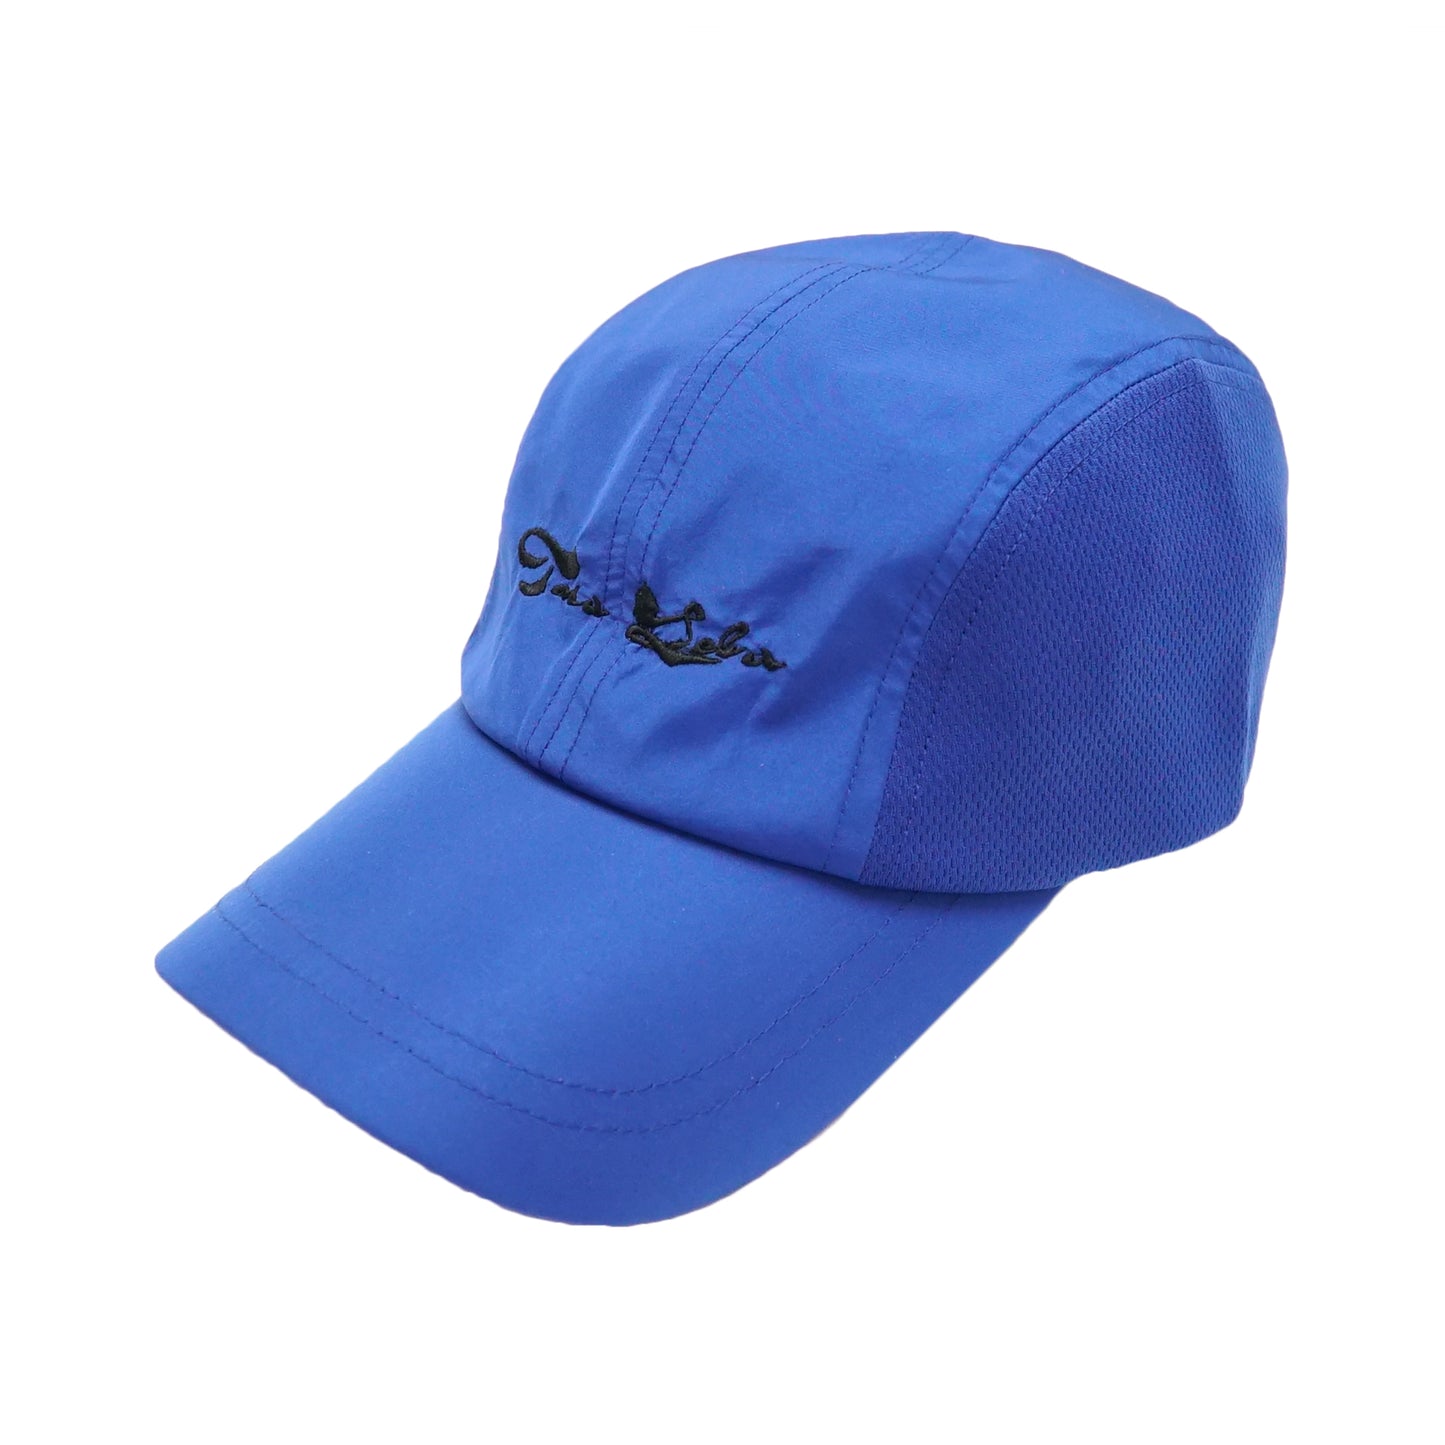 TARALEBA - Mitakishiki 帽子/藍色